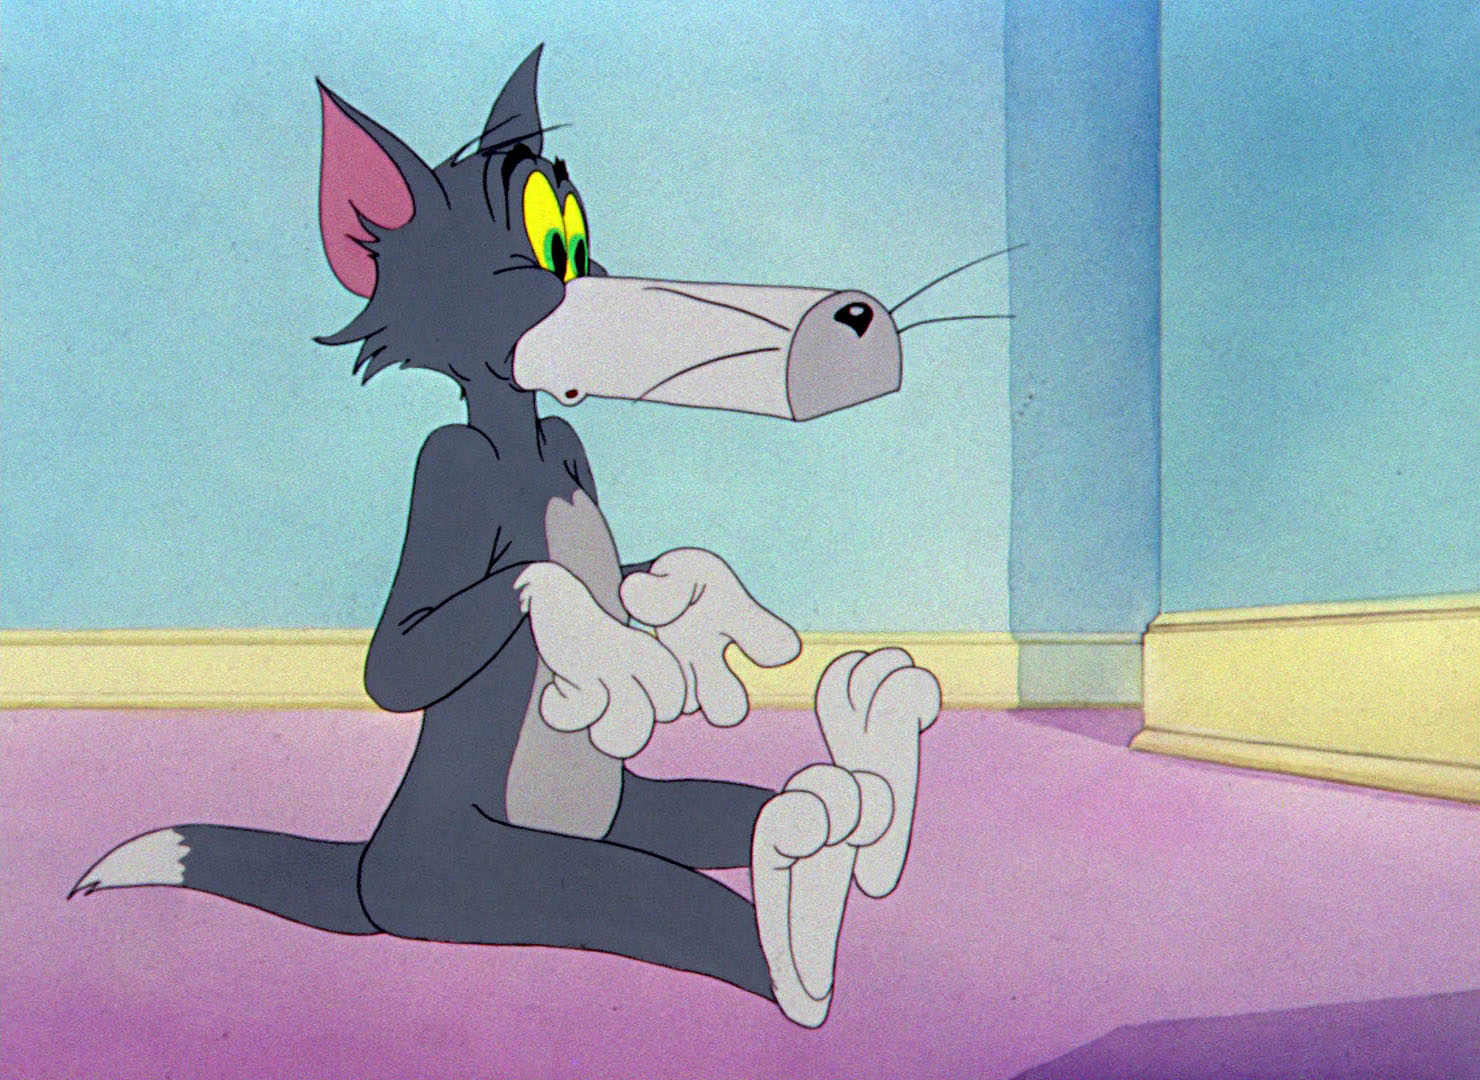 Tom funny. Tom and Jerry 1948. Том и Джерри том. Смешной том. Том из том и Джерри.